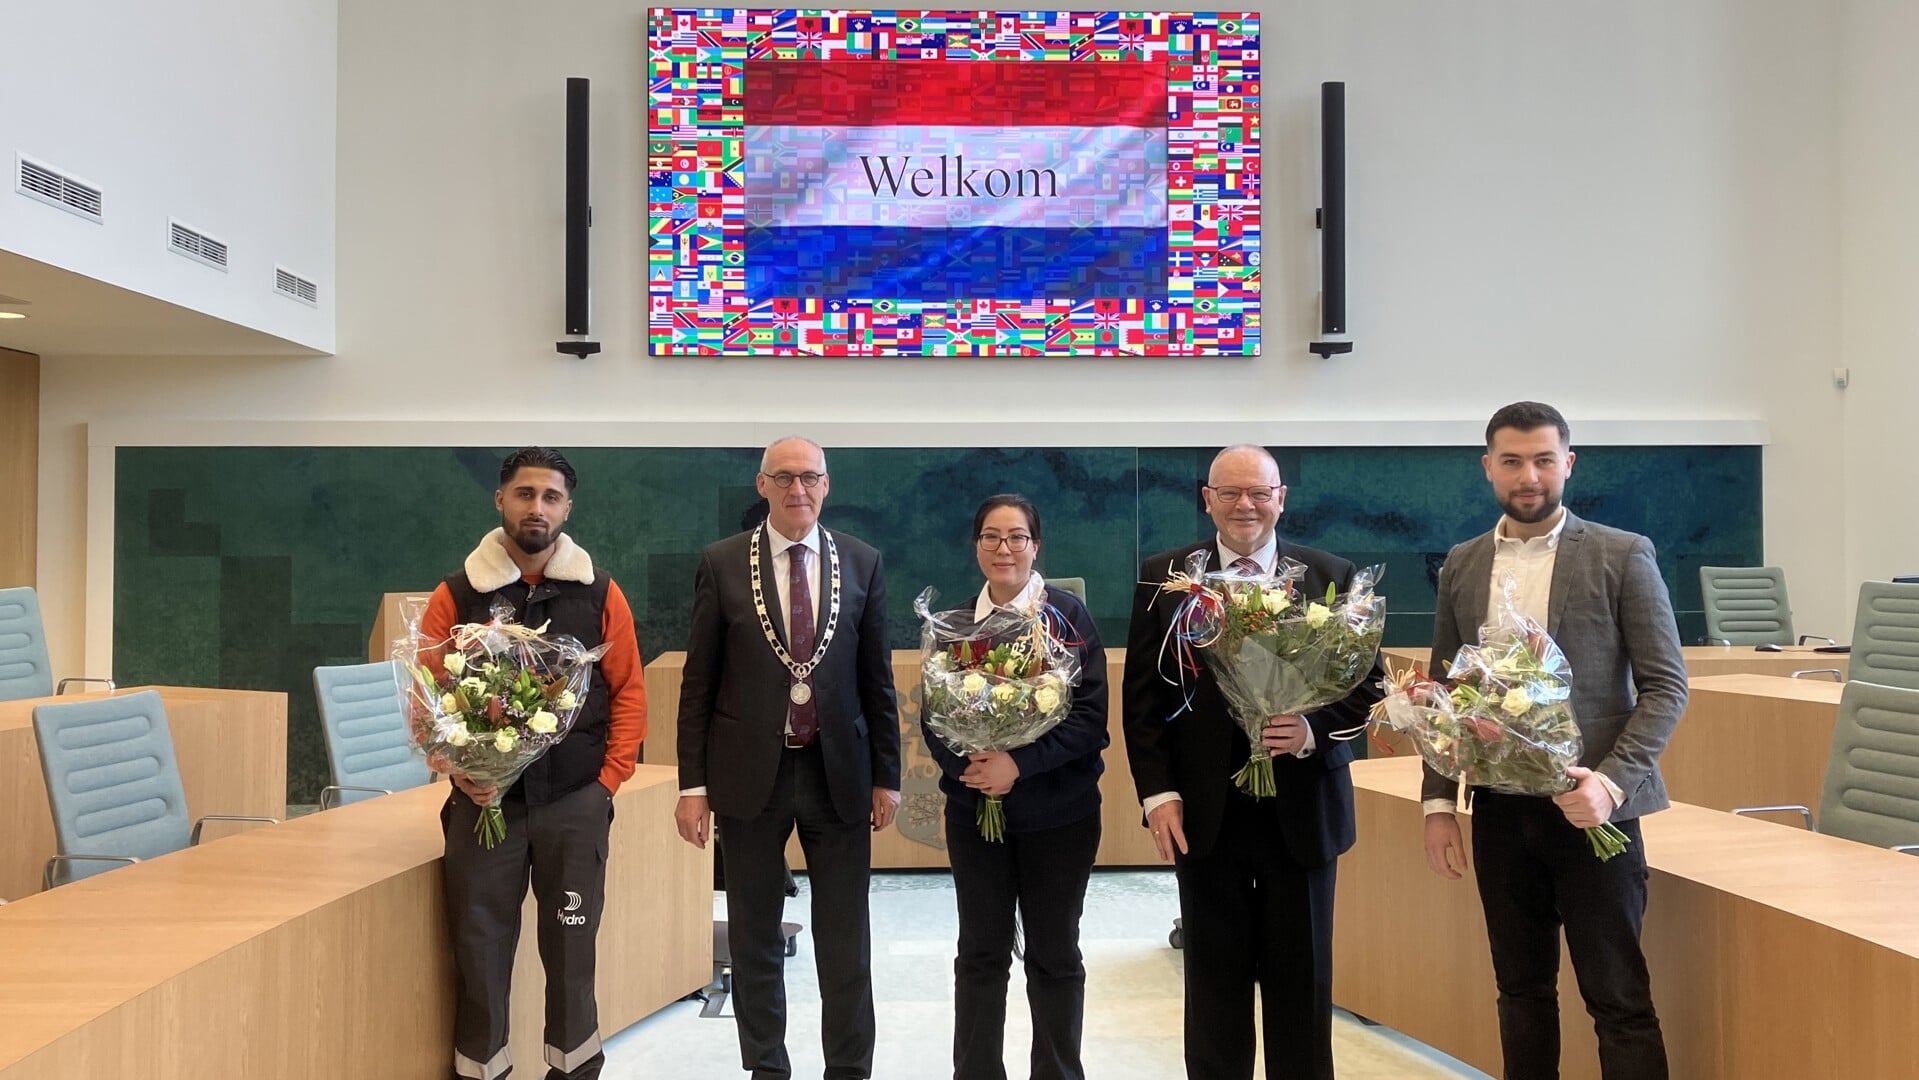 De burgemeester met vier van de vijf nieuwe Nederlandse Midden-Groningers. (foto: gemeente Midden-Groningen)